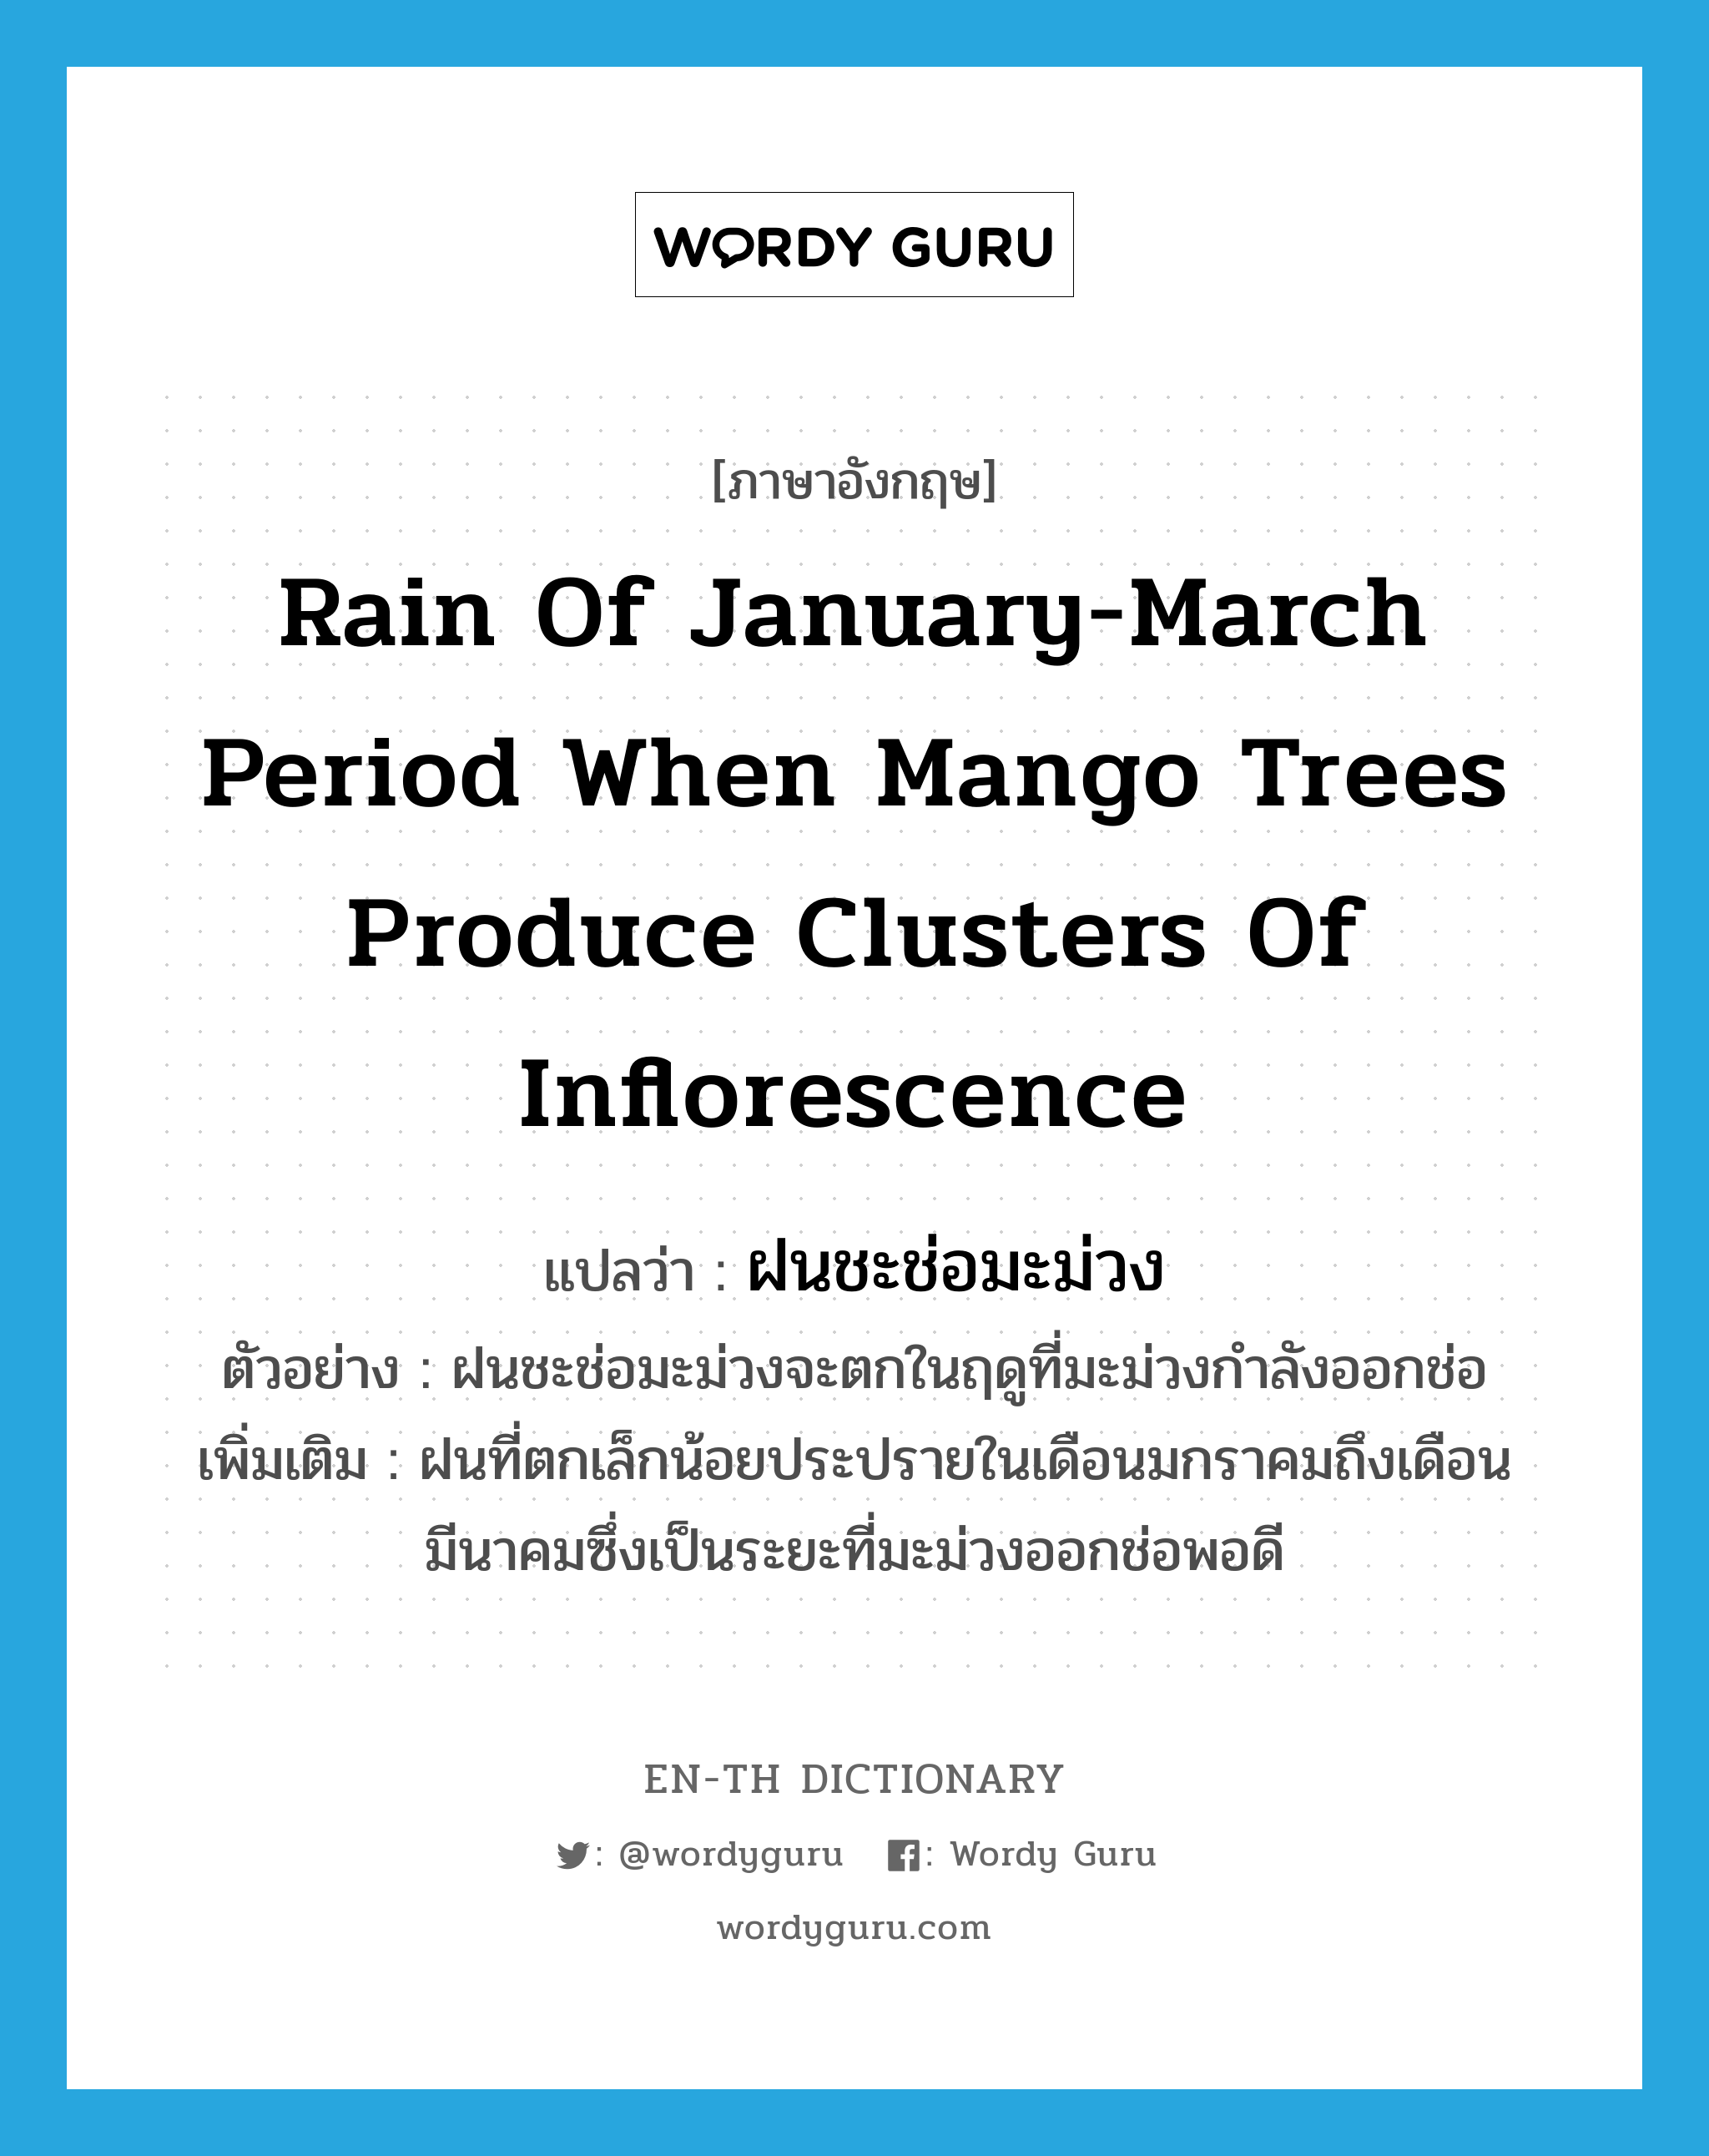 ฝนชะช่อมะม่วง ภาษาอังกฤษ?, คำศัพท์ภาษาอังกฤษ ฝนชะช่อมะม่วง แปลว่า rain of January-March period when mango trees produce clusters of inflorescence ประเภท N ตัวอย่าง ฝนชะช่อมะม่วงจะตกในฤดูที่มะม่วงกำลังออกช่อ เพิ่มเติม ฝนที่ตกเล็กน้อยประปรายในเดือนมกราคมถึงเดือนมีนาคมซึ่งเป็นระยะที่มะม่วงออกช่อพอดี หมวด N